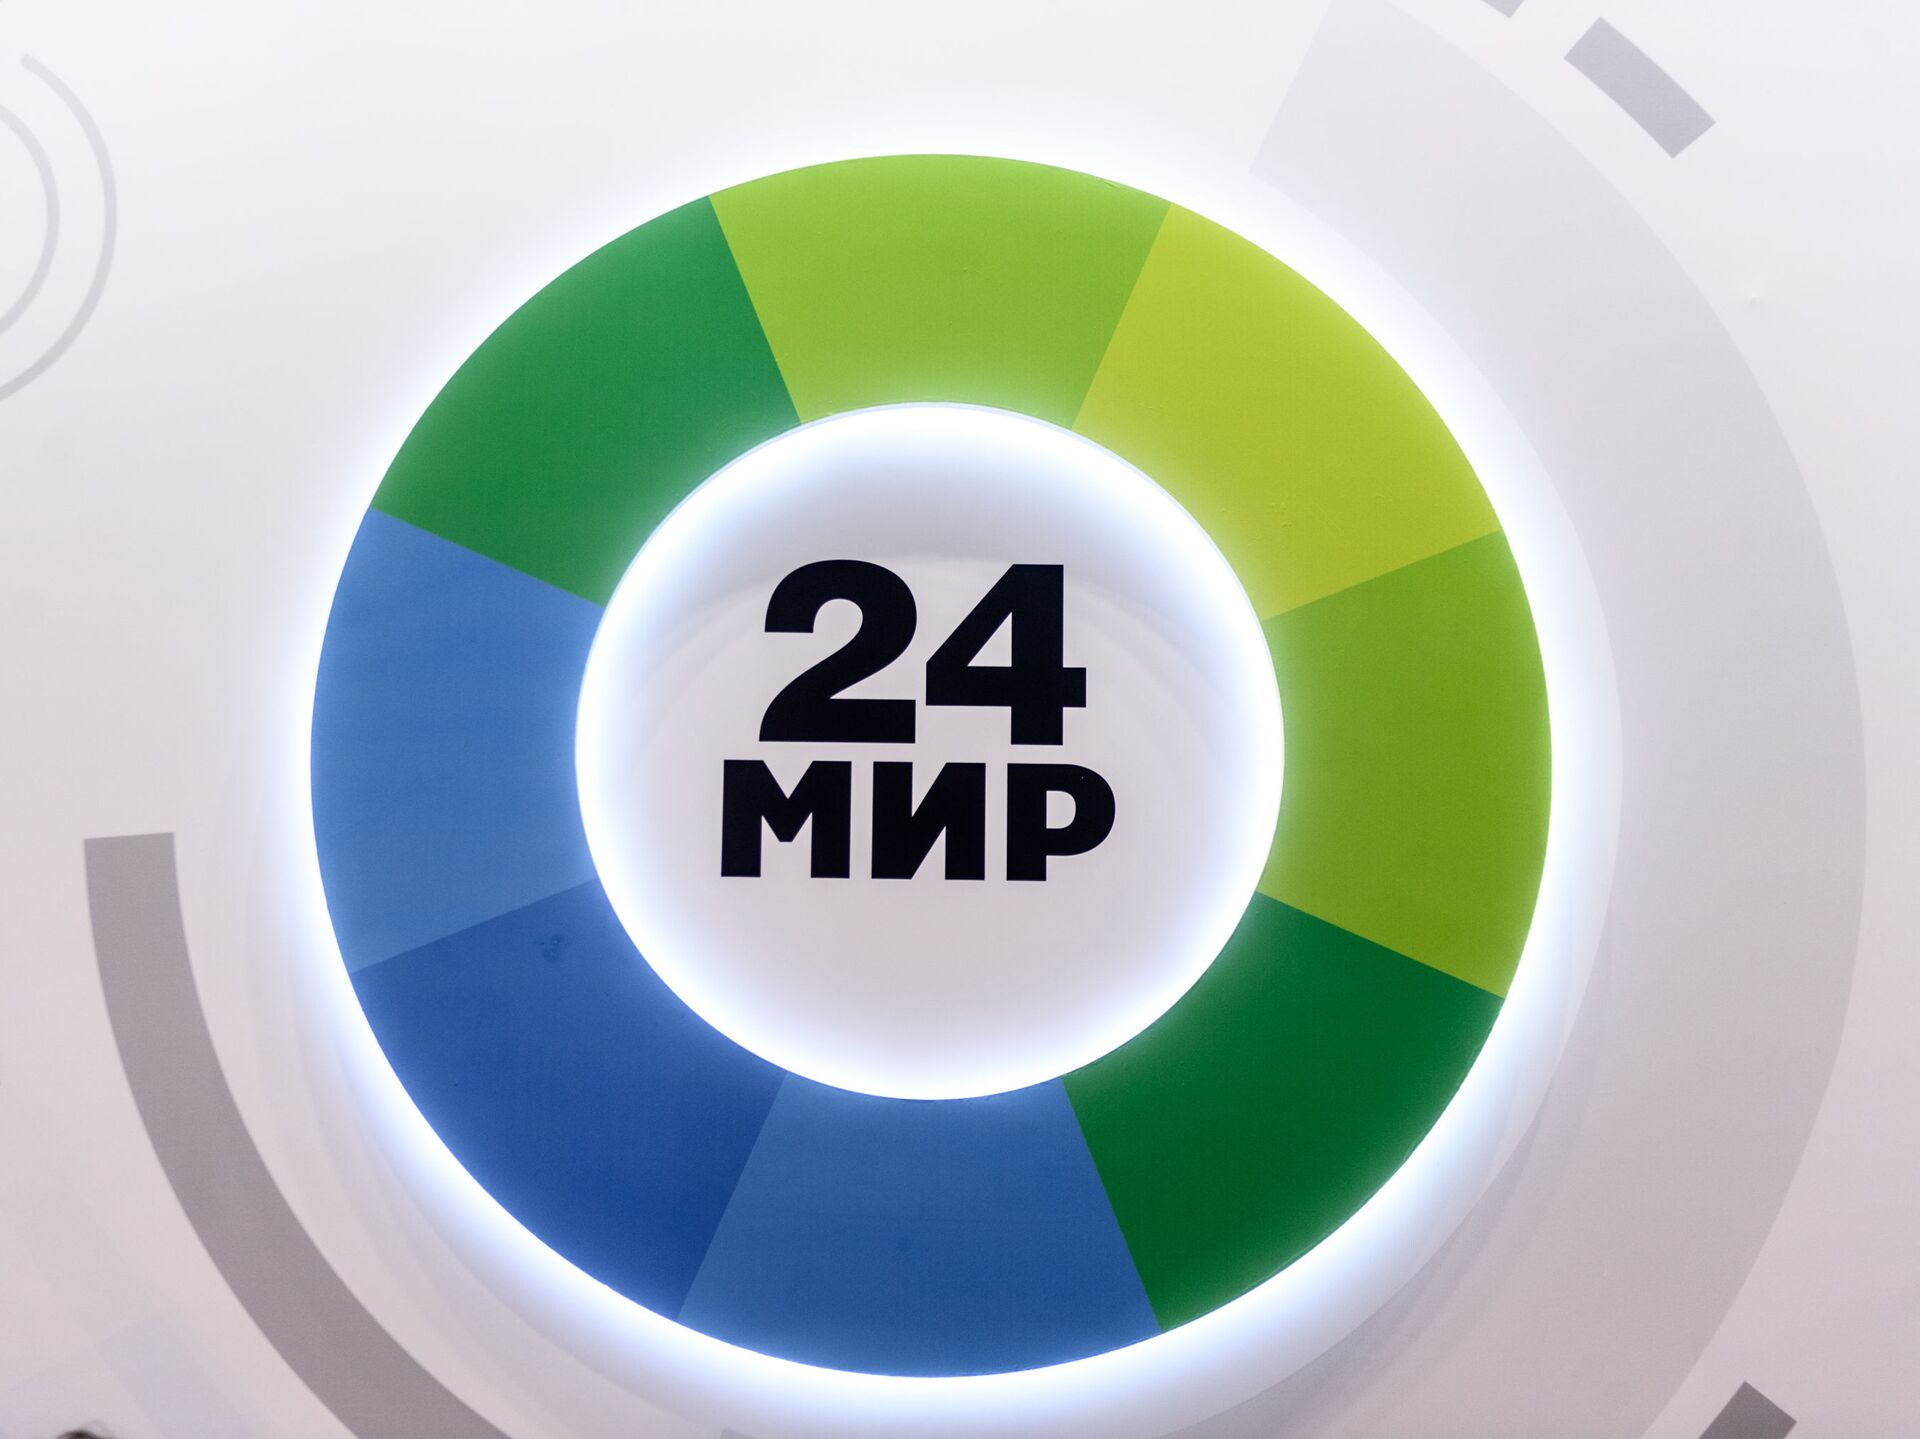 Канал мир прямая трансляция. Логотип телеканала мик24. Мир 24. Телеканал мир 24. Эмблема телеканала мир.